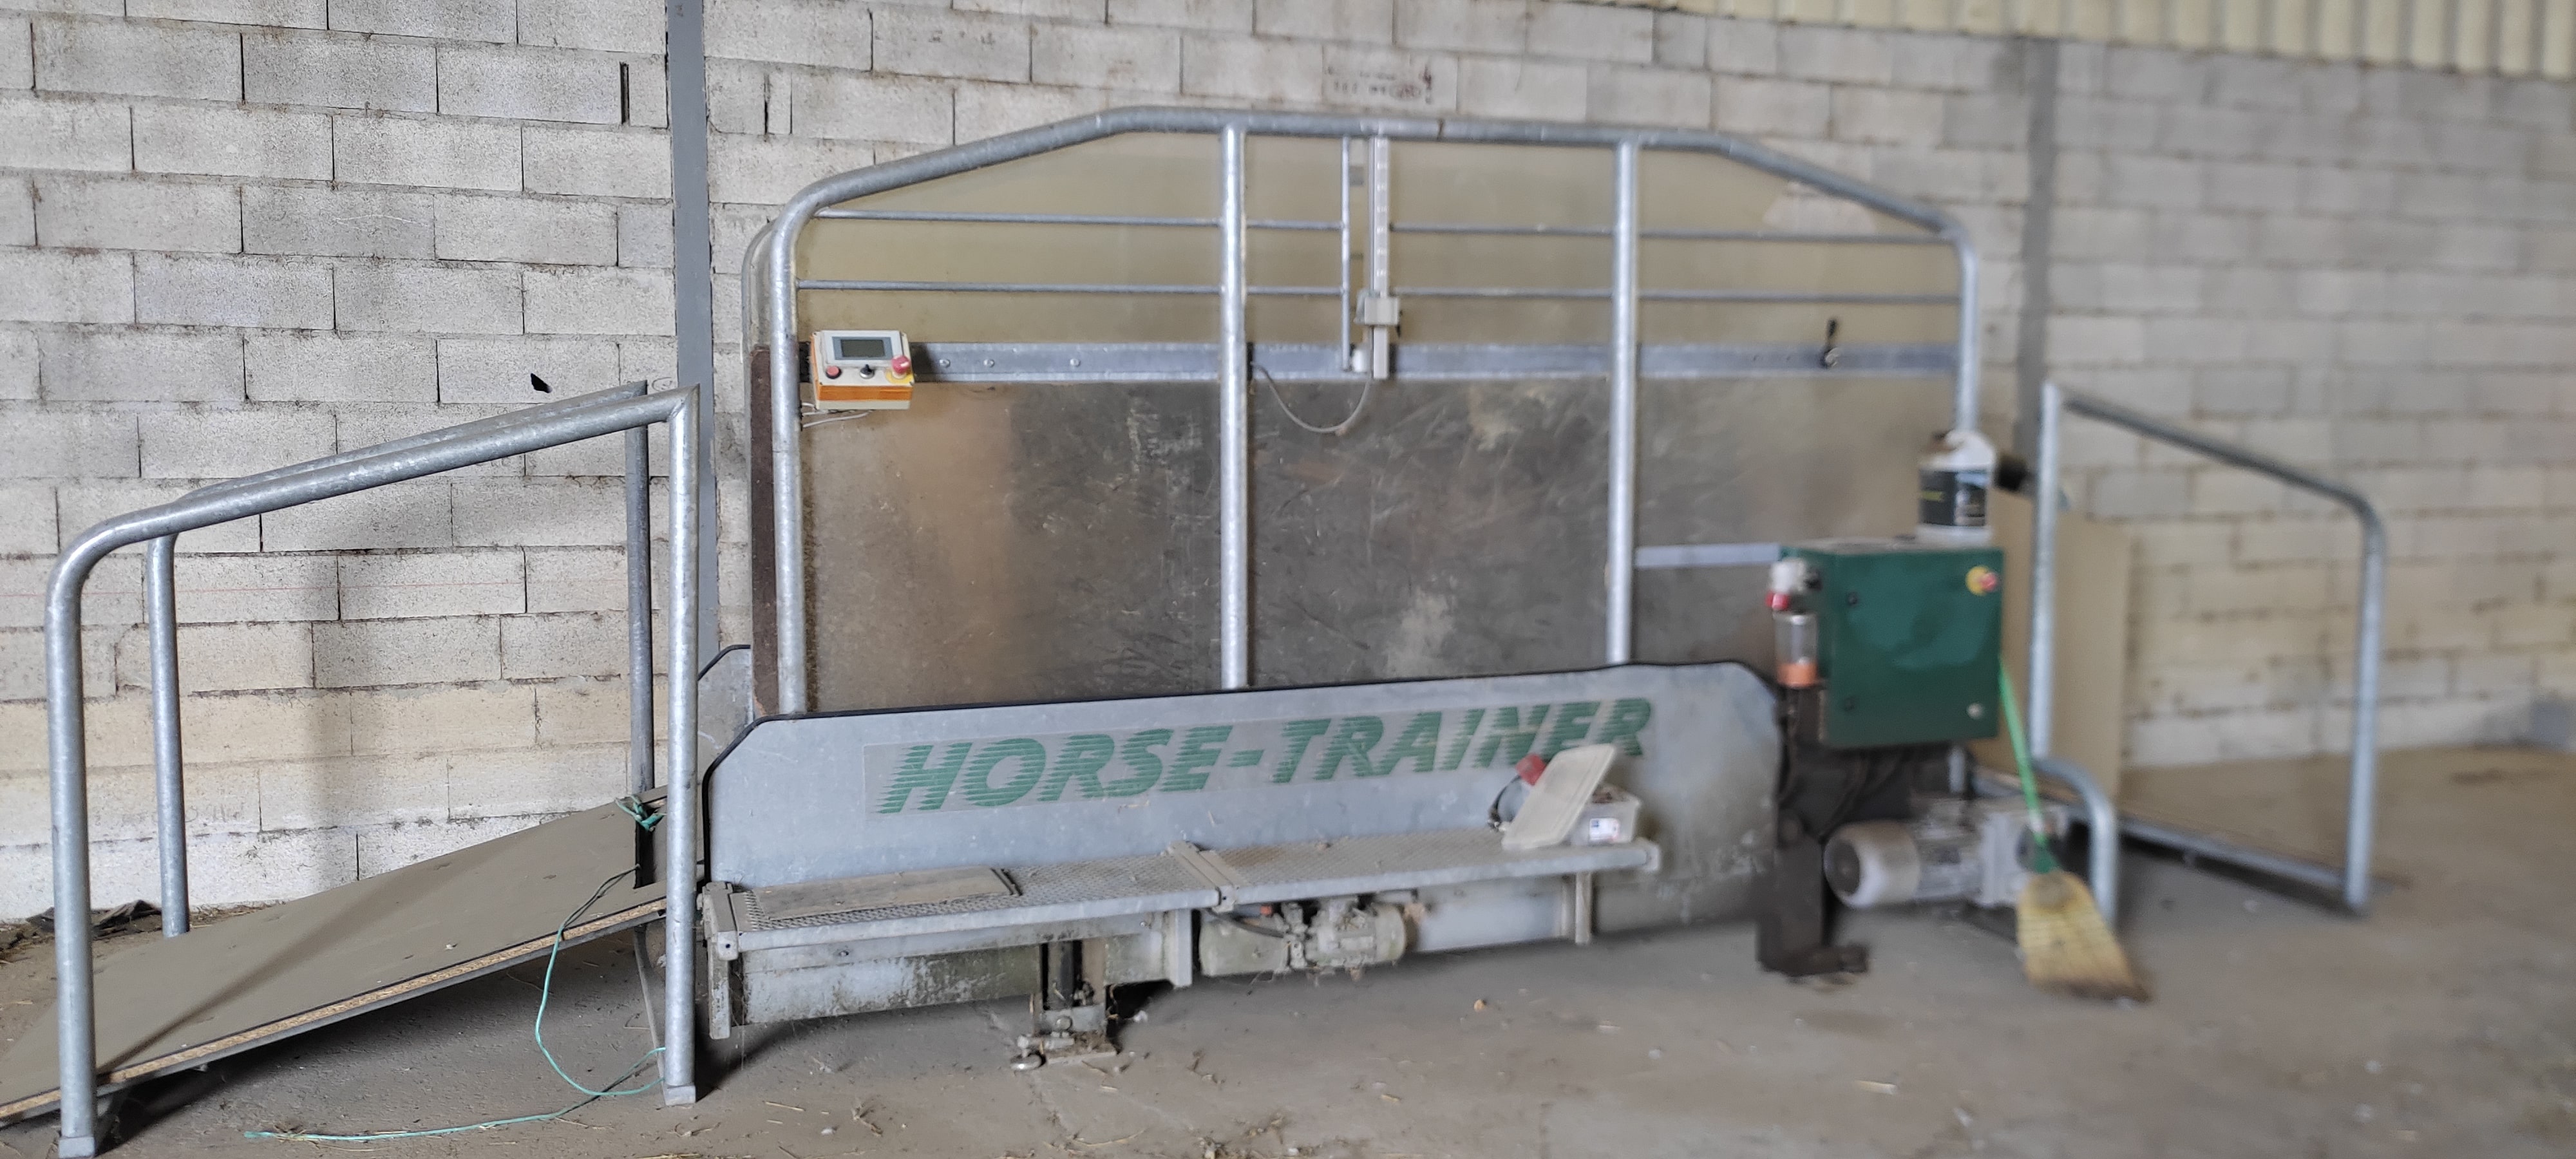 Image de l'annonce Rare tapis roulant Horse trainer